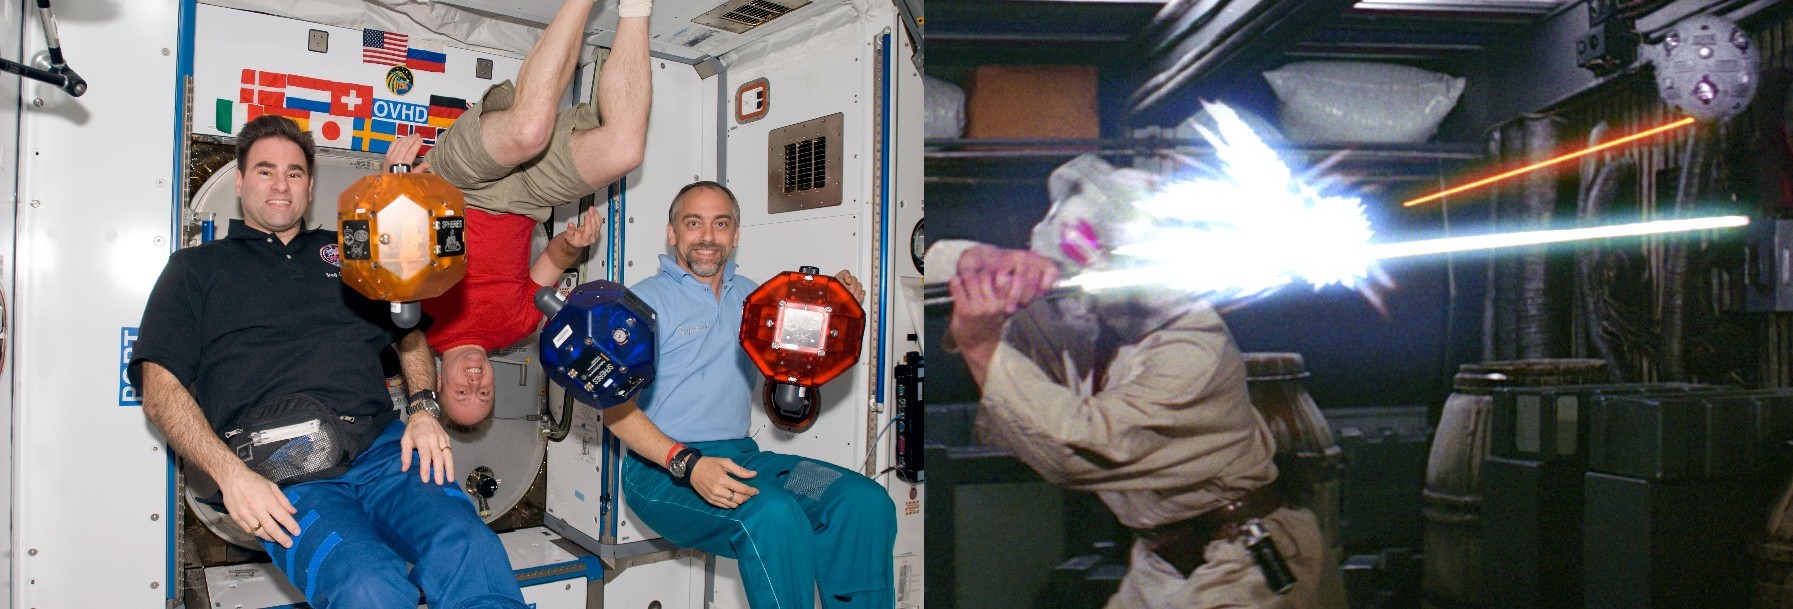 Luke Skywalker Remotes vs ISS Spheres